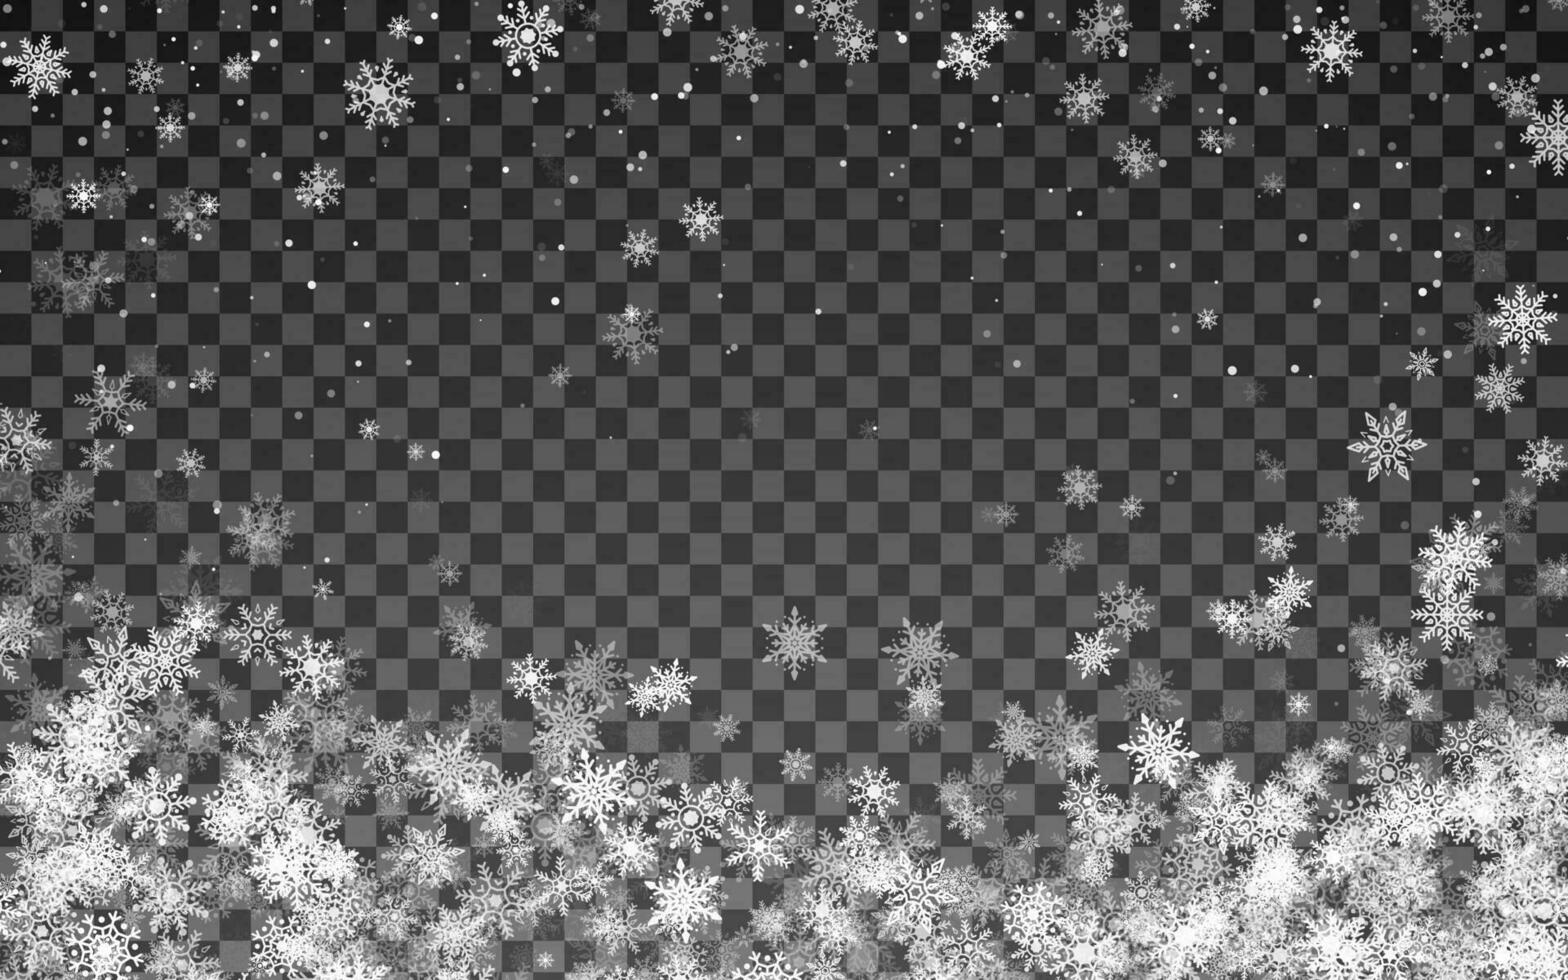 magie Kerstmis sneeuwval. vallend wit sneeuwvlokken. vector illustratie